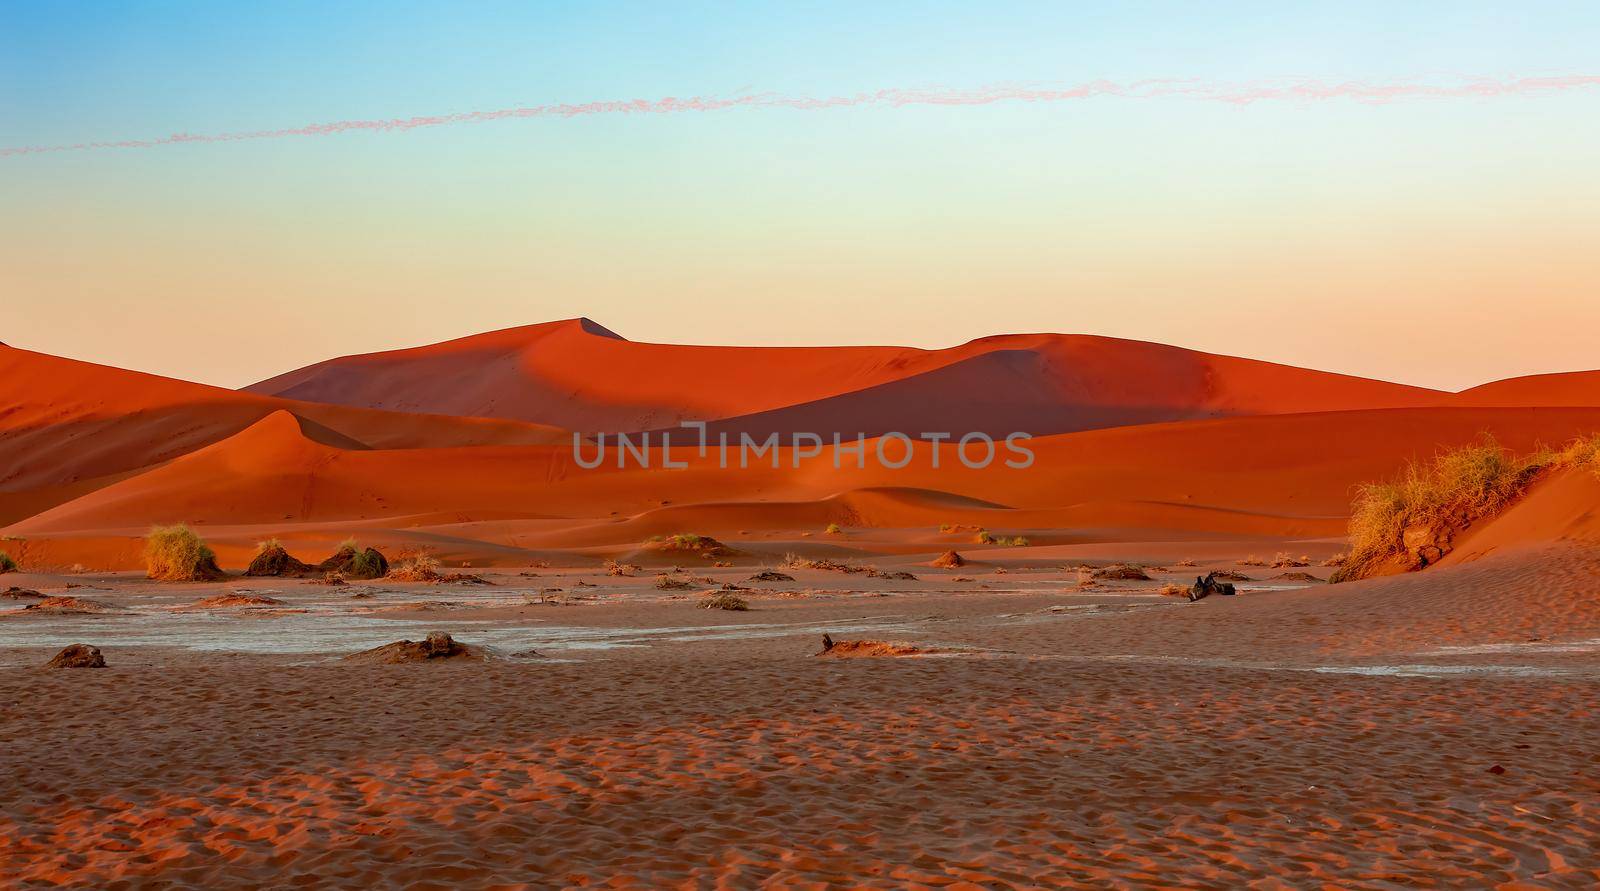 Arid dead sunrise landscape, near famous Dead Vlei in Namib desert, dune with morning sun, Namibia, Africa wilderness landscape